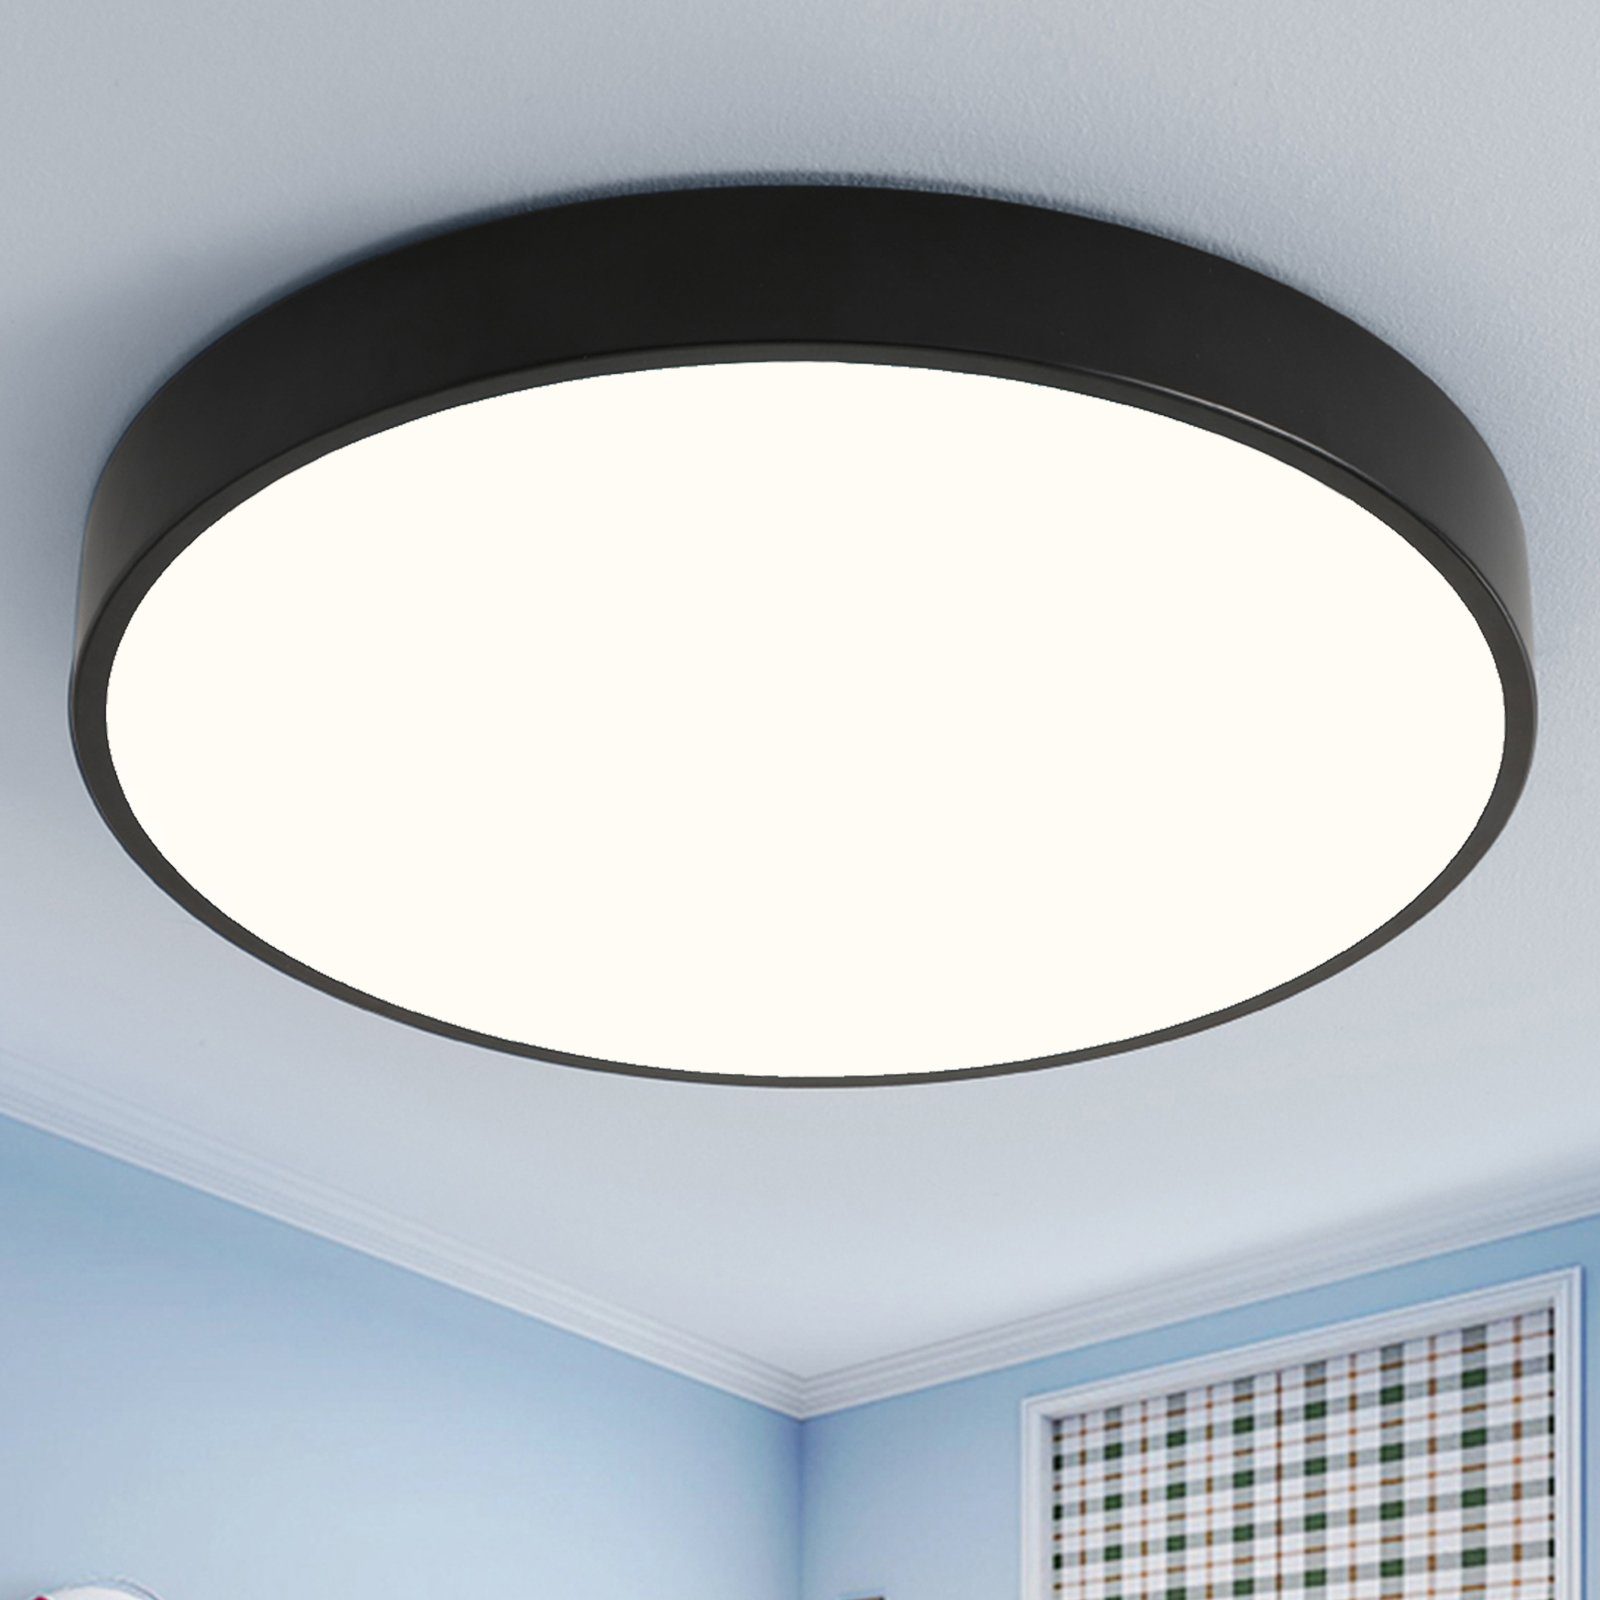 style home Deckenleuchte, 24W LED Deckenleuchte Deckenlampe (Schwarz),  Warmweiß, für Wohnzimmer Schlafzimmer Küche Büro Diele Flur, Ultraslim  Ø30x4cm